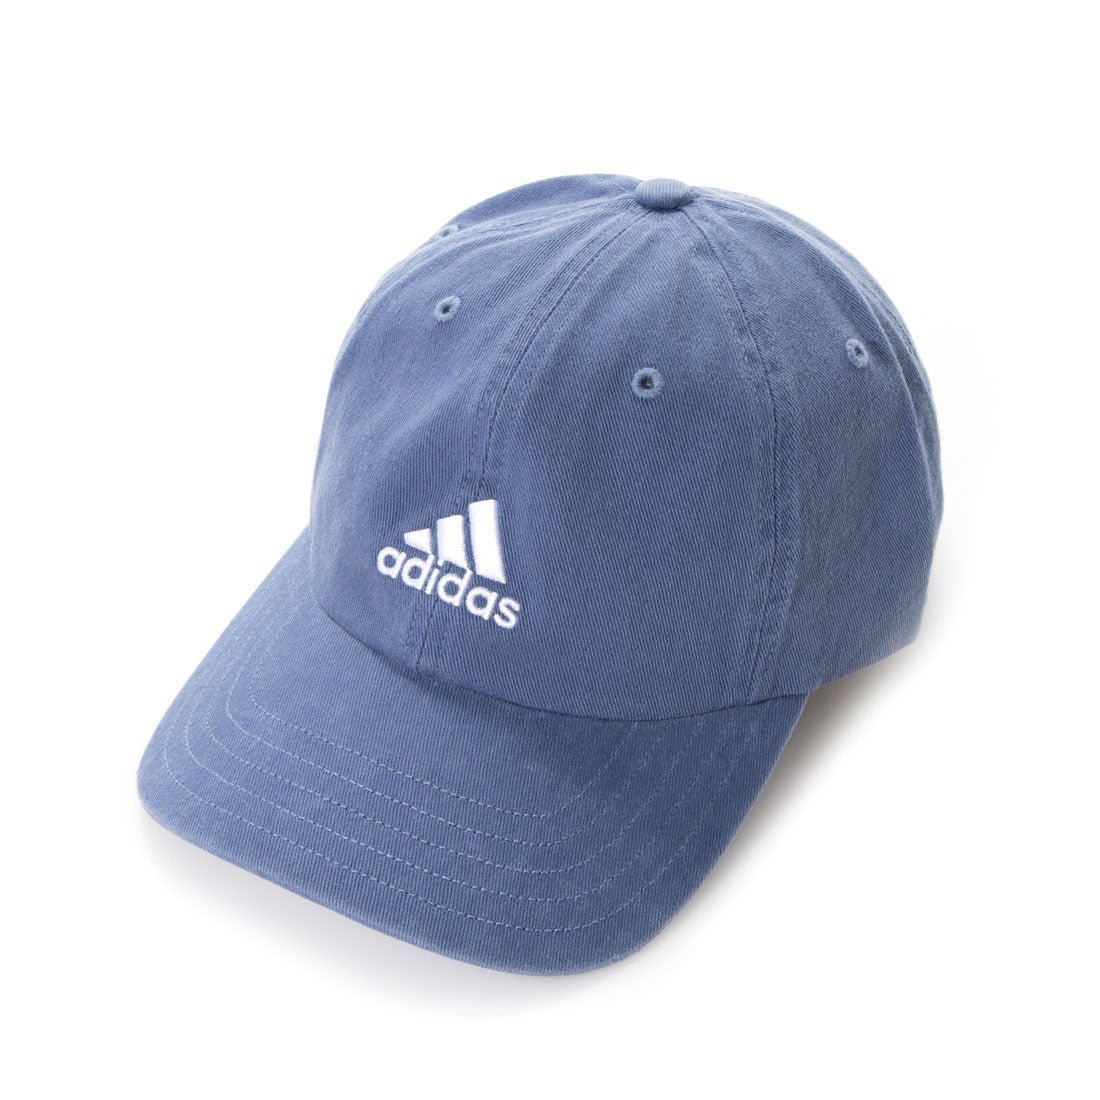 Adidas หมวก ปรับได้ Unisex Running Cap ใส่ได้ทั้งผู้หญิงและผู้ชาย Adjustable Cap (ลิขสิทธิ์แท้ 100%) การันตี ส่งไวด้วย kerry!!!